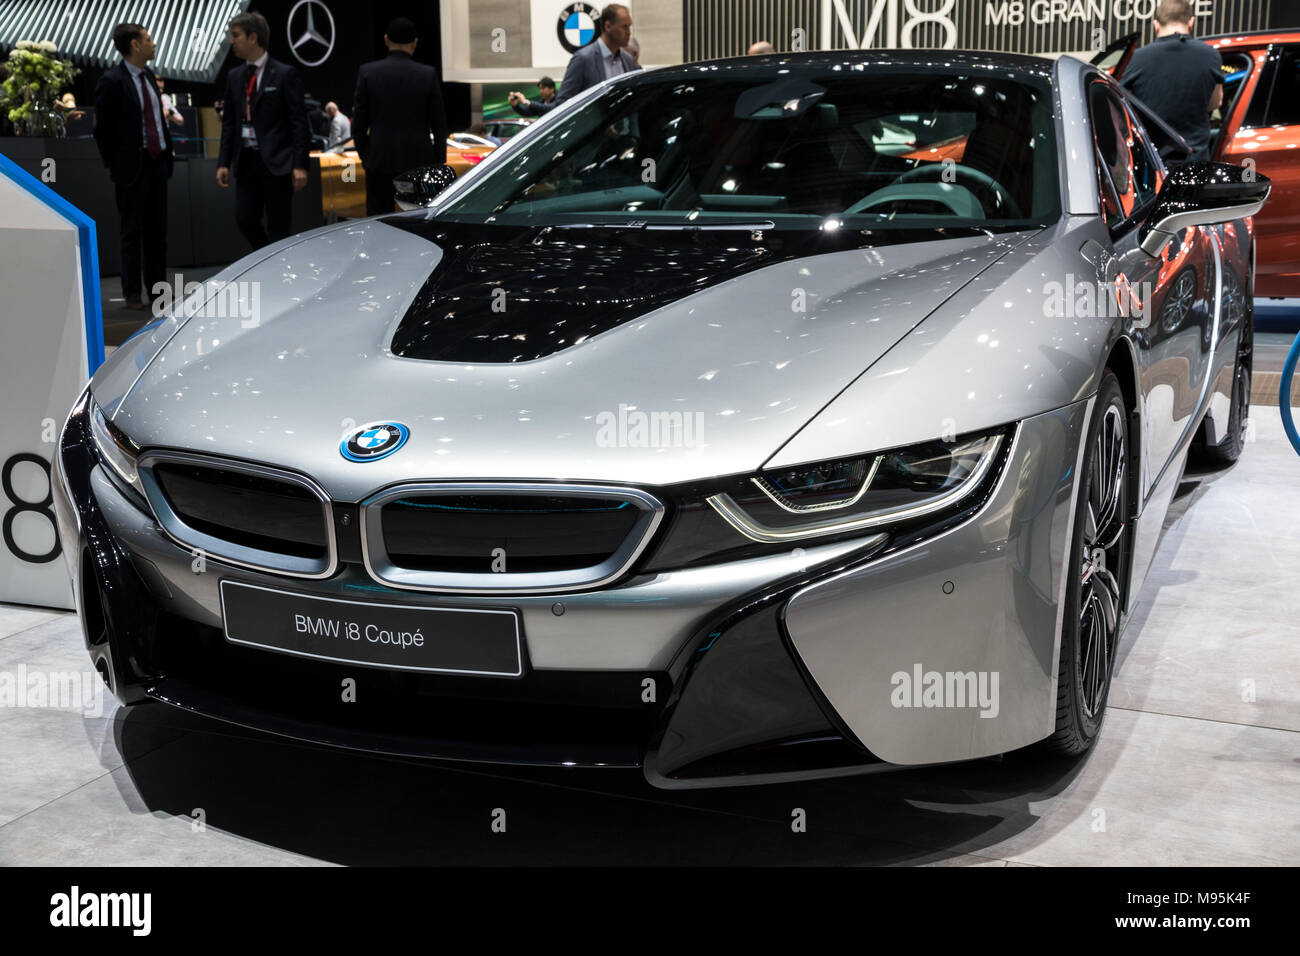 Genf, Schweiz - 7. MÄRZ 2018: Vorderansicht eines BMW i8 Coupé e-sport auto  auf dem 88. Internationalen Automobilsalon in Genf präsentiert  Stockfotografie - Alamy